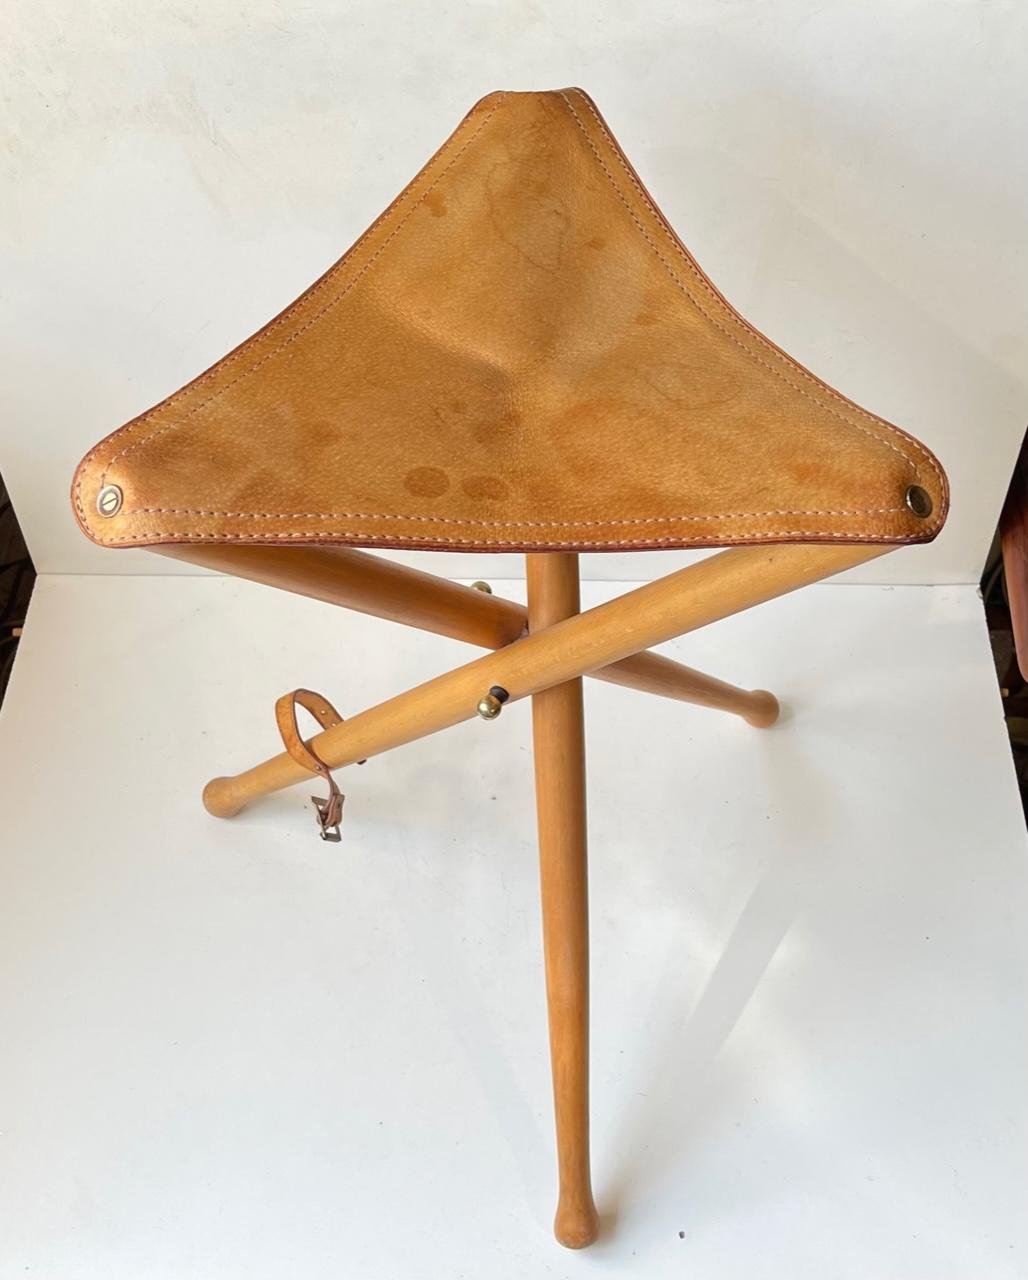 Tabouret de chasse vintage scandinave tripode avec des pieds en bois de hêtre massif laqué et une assise en cuir de selle tanné épais. Fabriqué dans les années 1960 ou 1970. Dimensions : H : 52 cm, L/D : 35/31 cm debout.